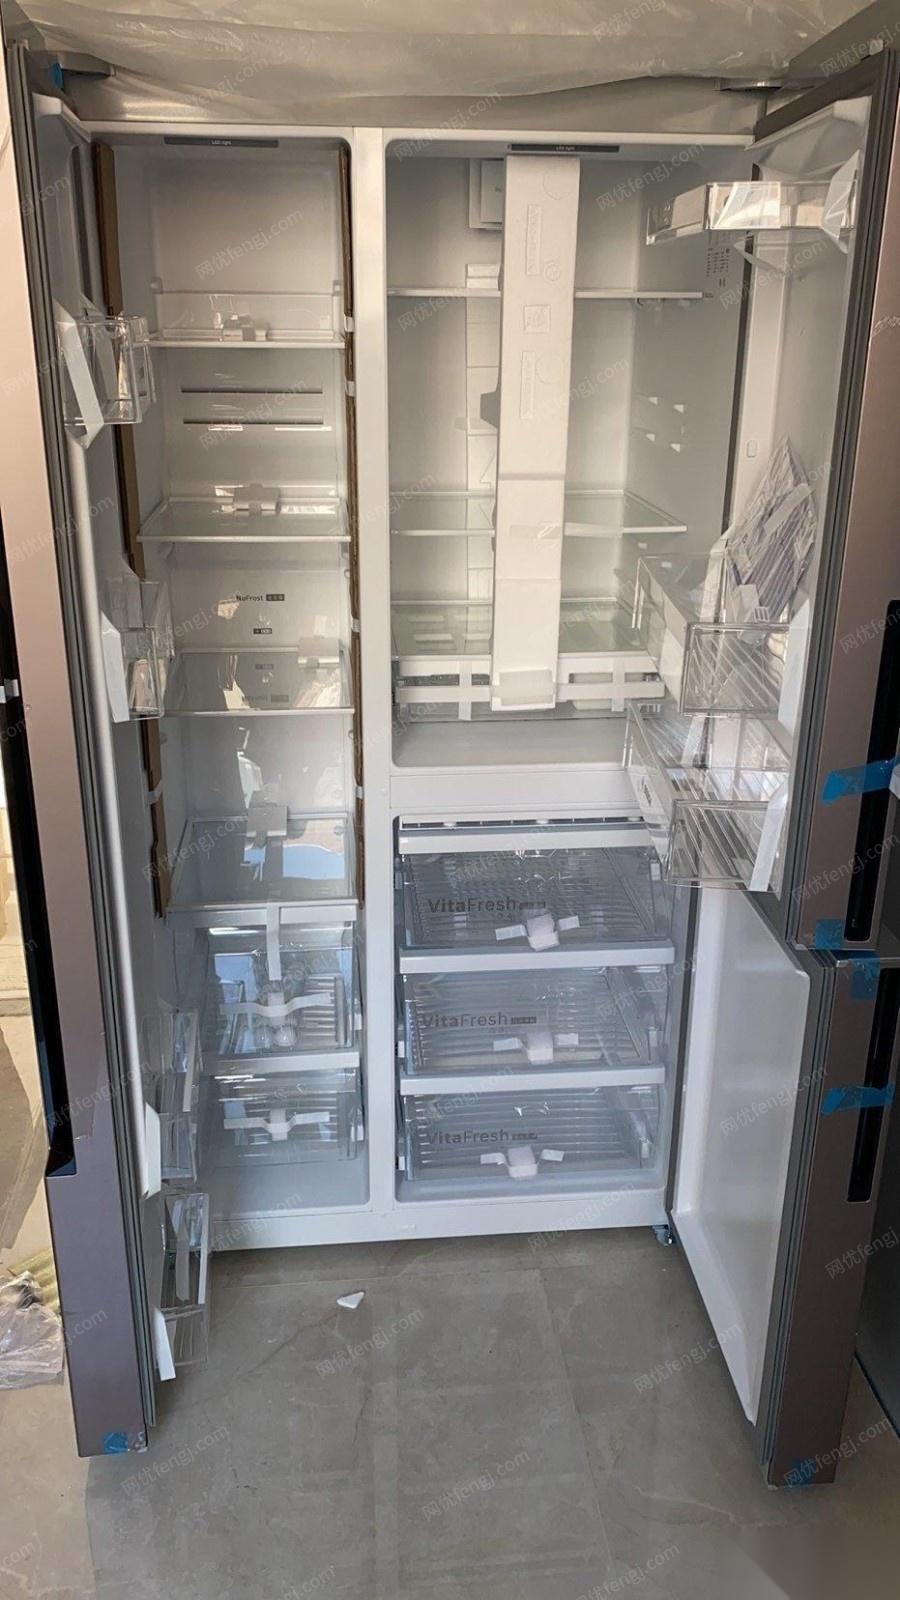 天津宝坻区 因尺寸问题出售博世对开门冰箱一个忍痛转让 全新未用